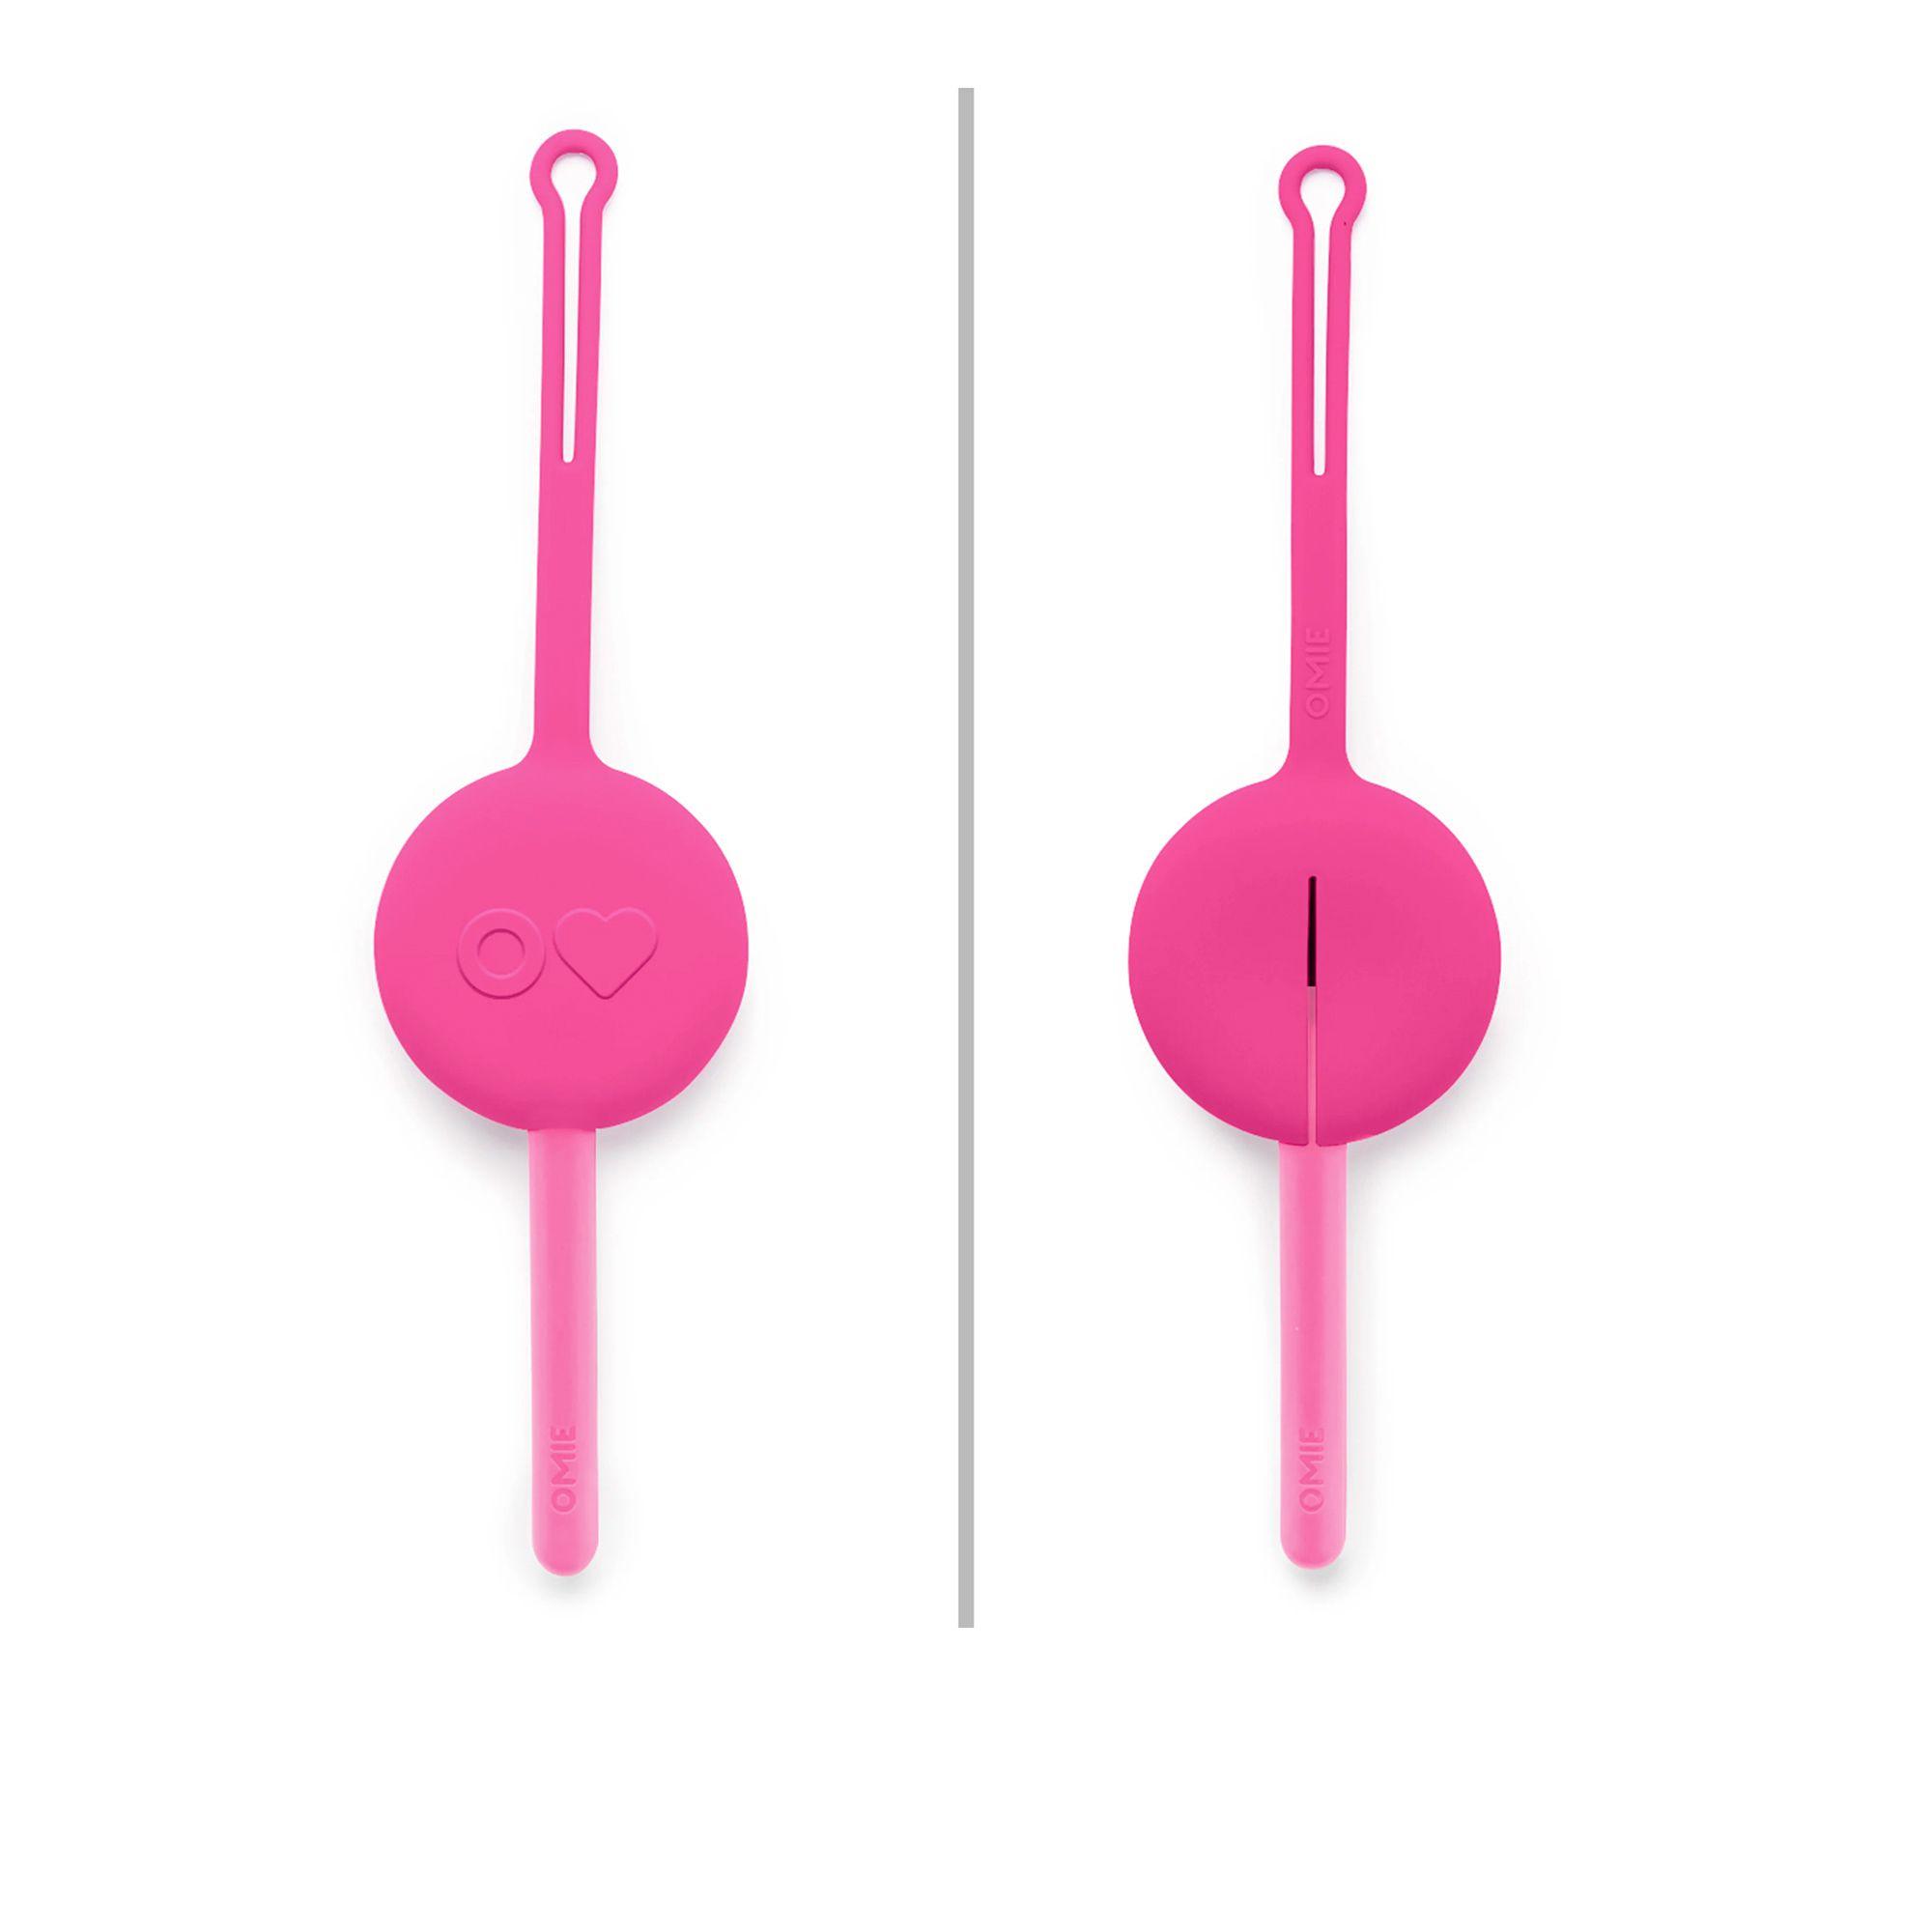 Omie OmiePod Cutlery Set 3pc Bubble Pink Image 3